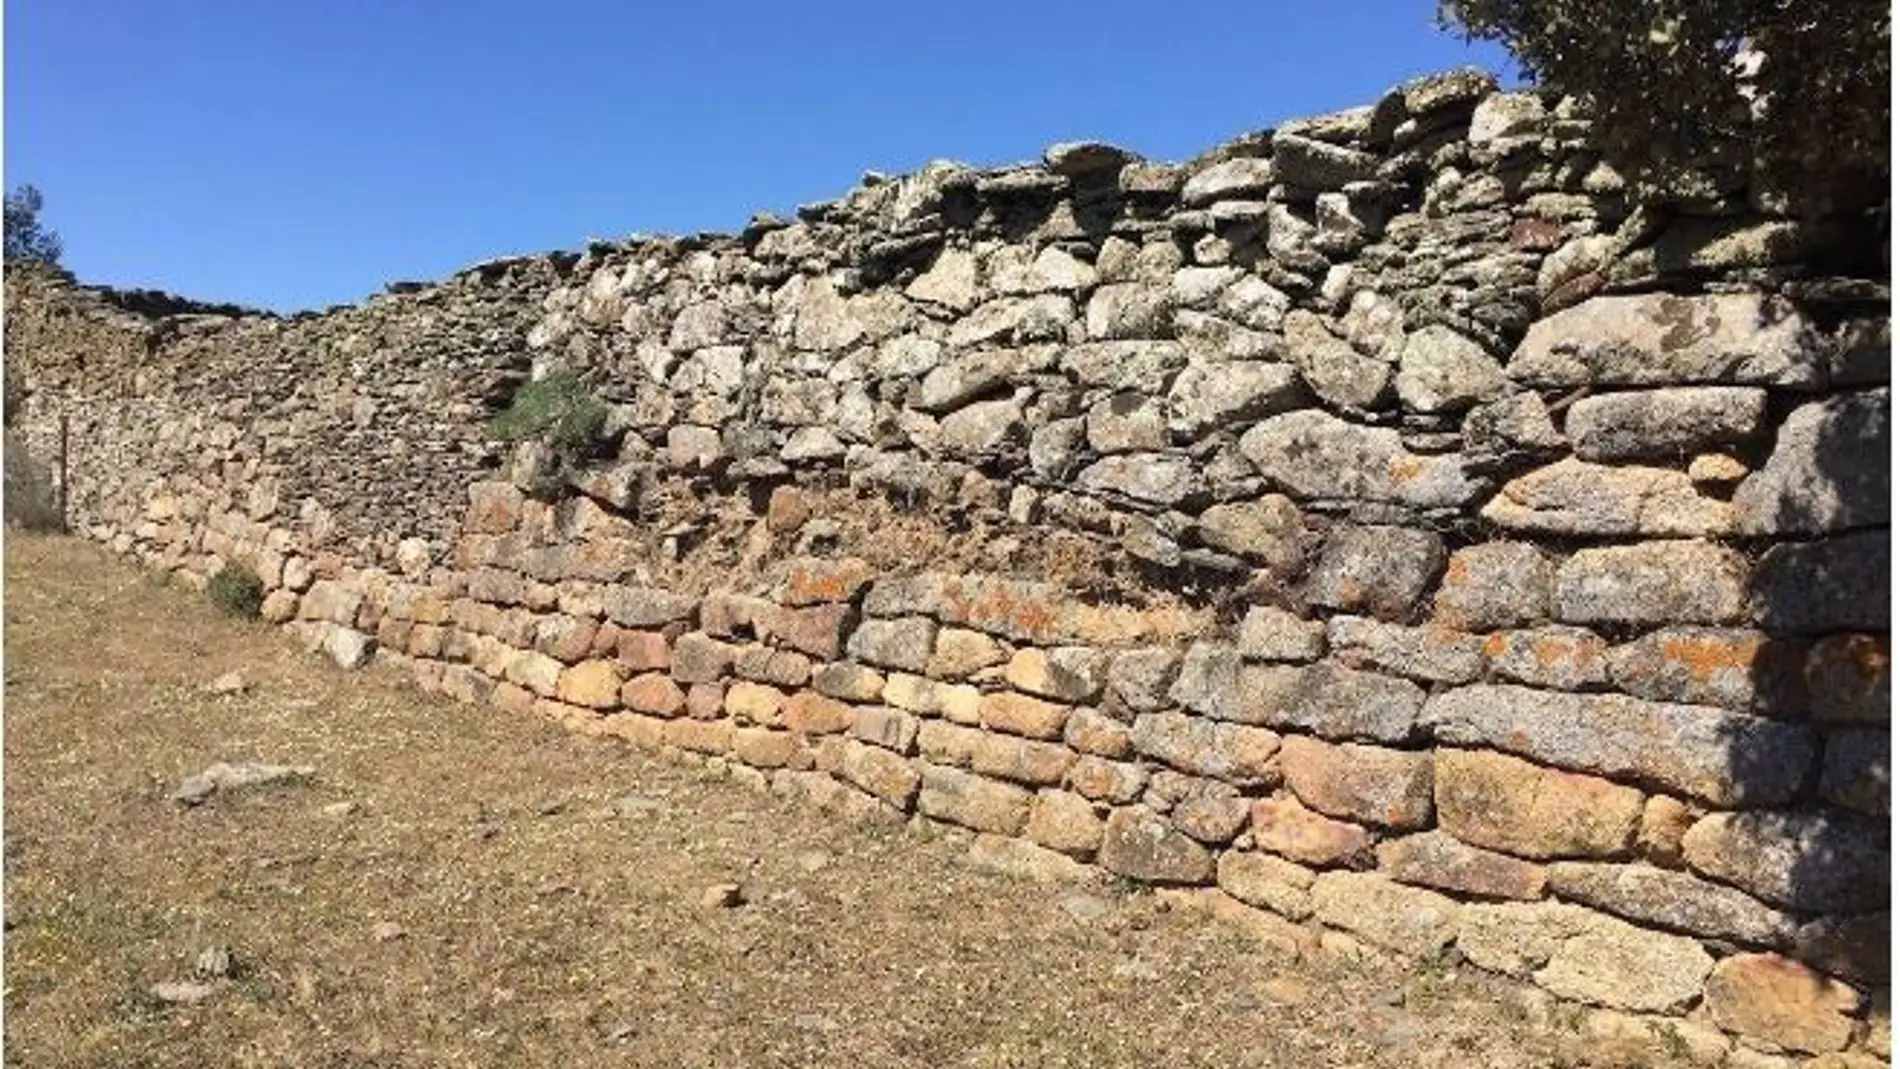 Descubierta una entrada desconocida en el yacimiento de Villasviejas del Tamuja en la localidad cacereña de Botija